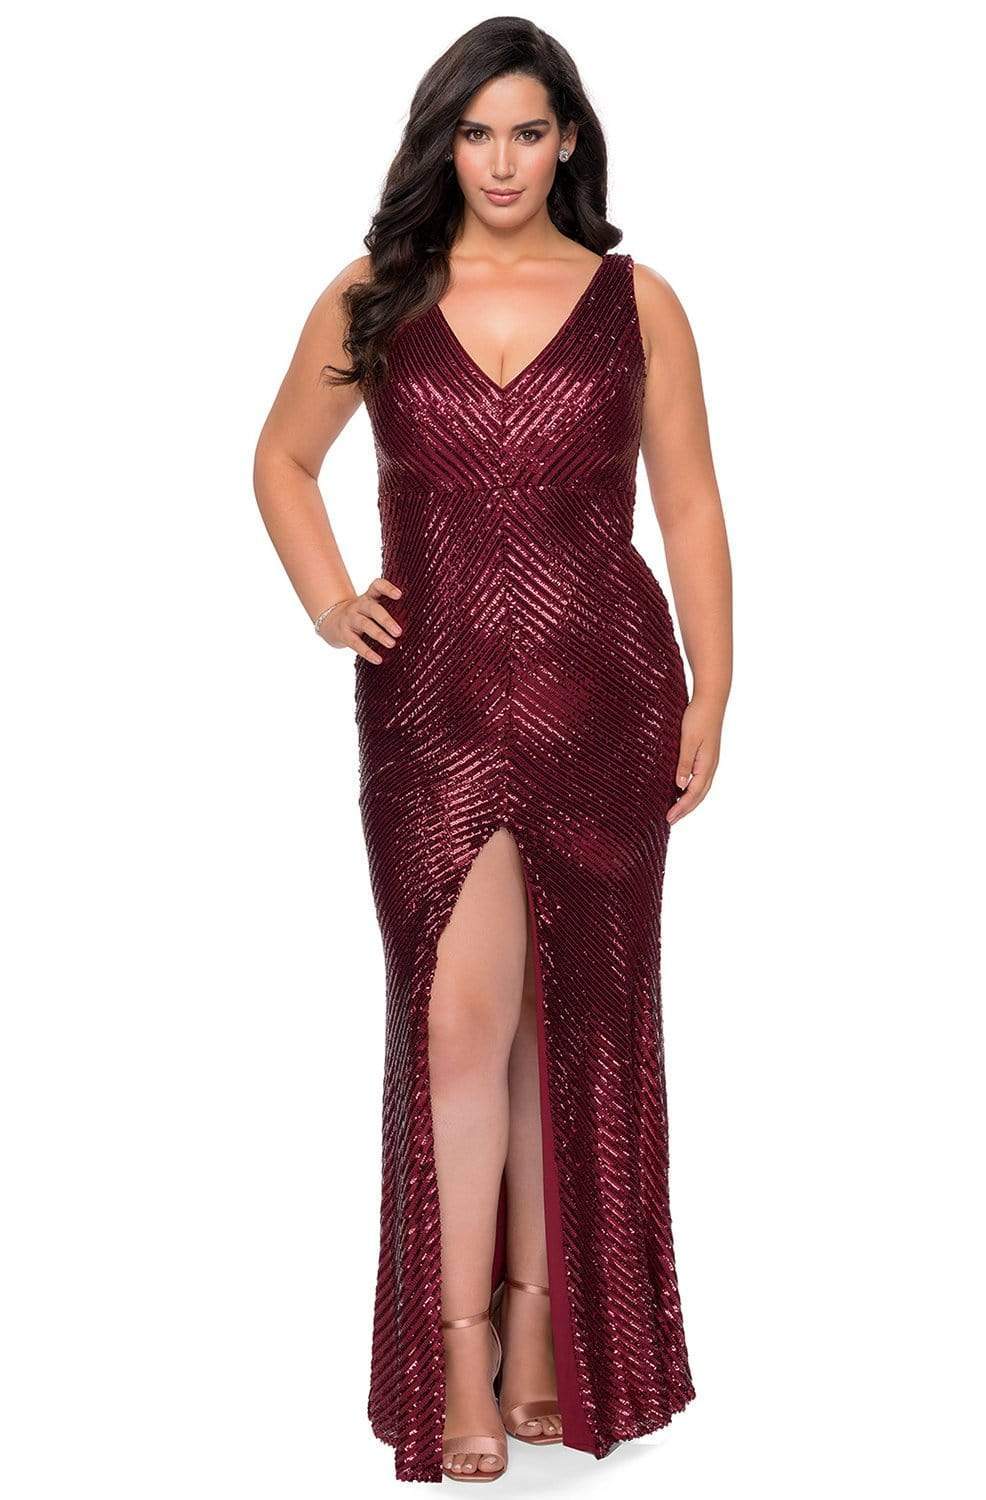 La Femme - 28796 Sequined V-Neck Dress with Slit Evening Dresses 12W / Wine